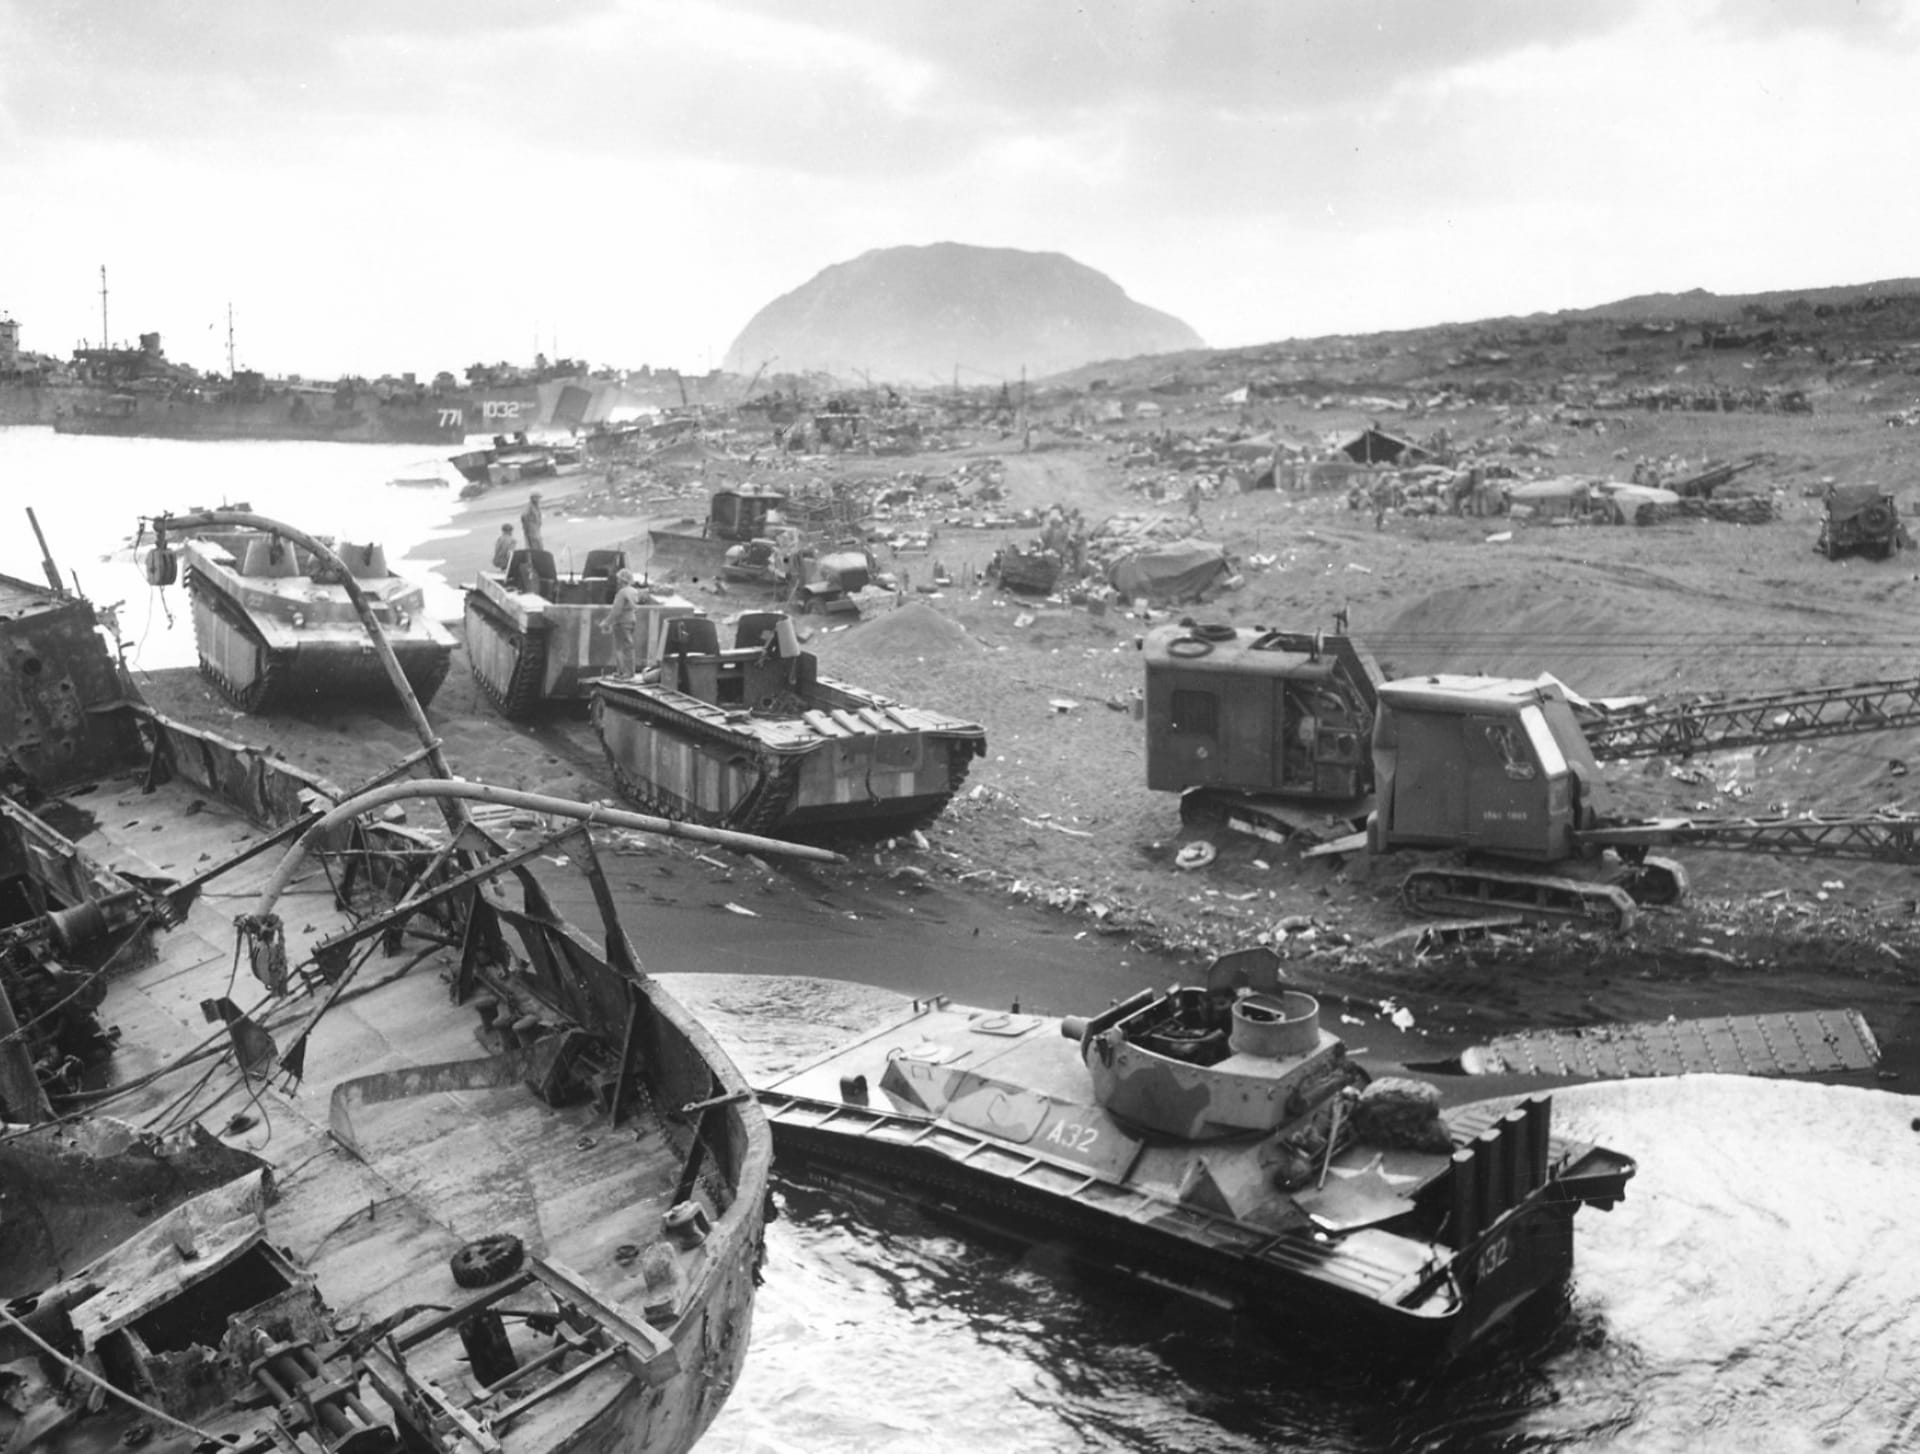 Battle Of Iwo Jima at 1024 x 1024 iPad size wallpapers HD quality